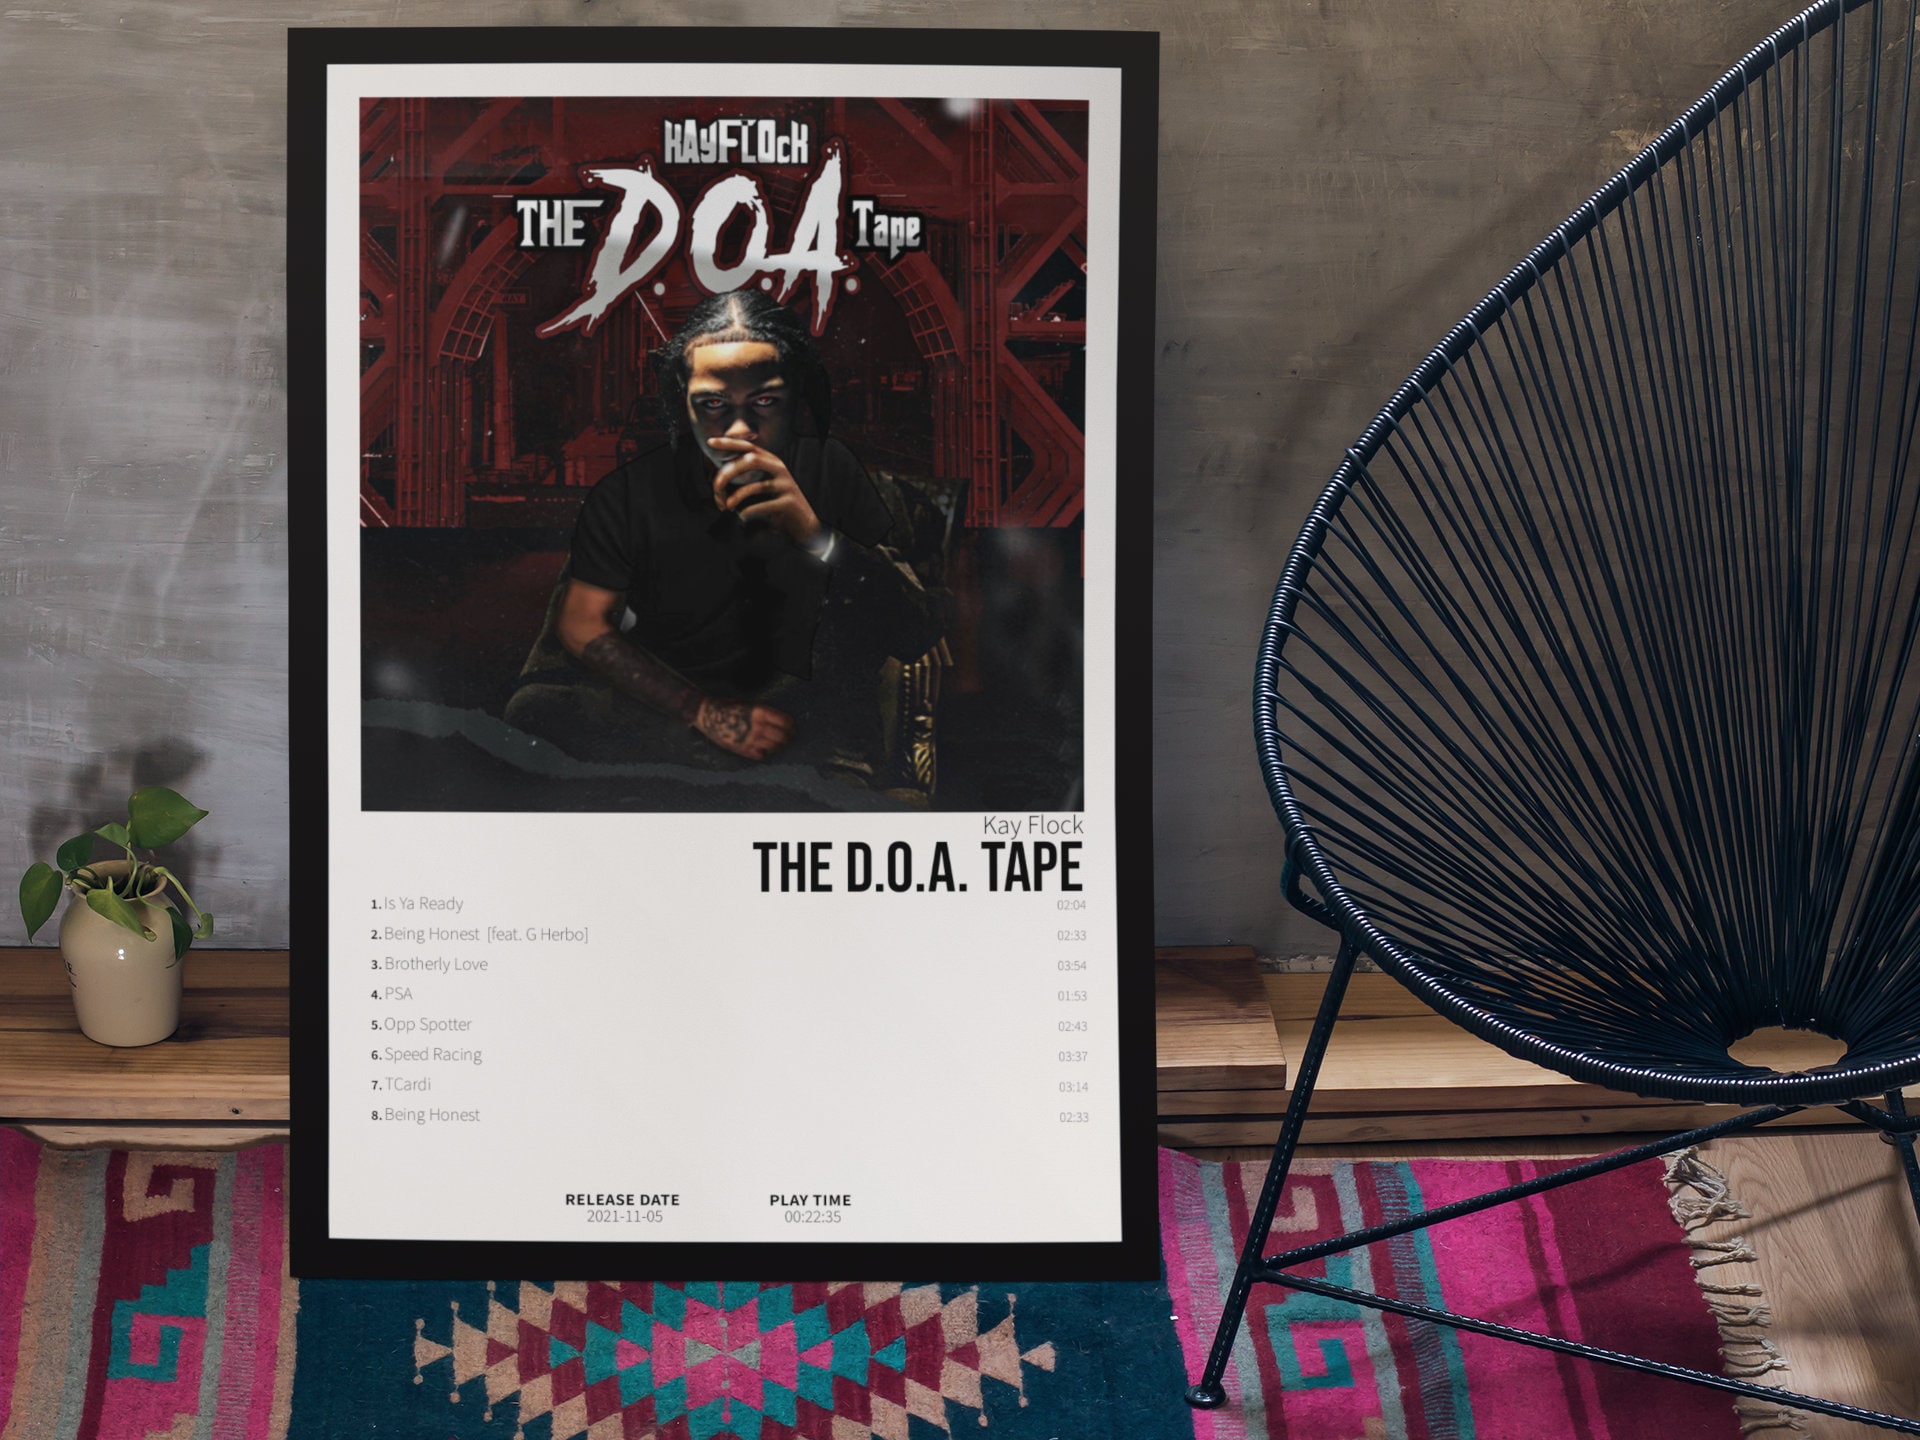 The D.O.A. Tape - Álbum de Kay Flock